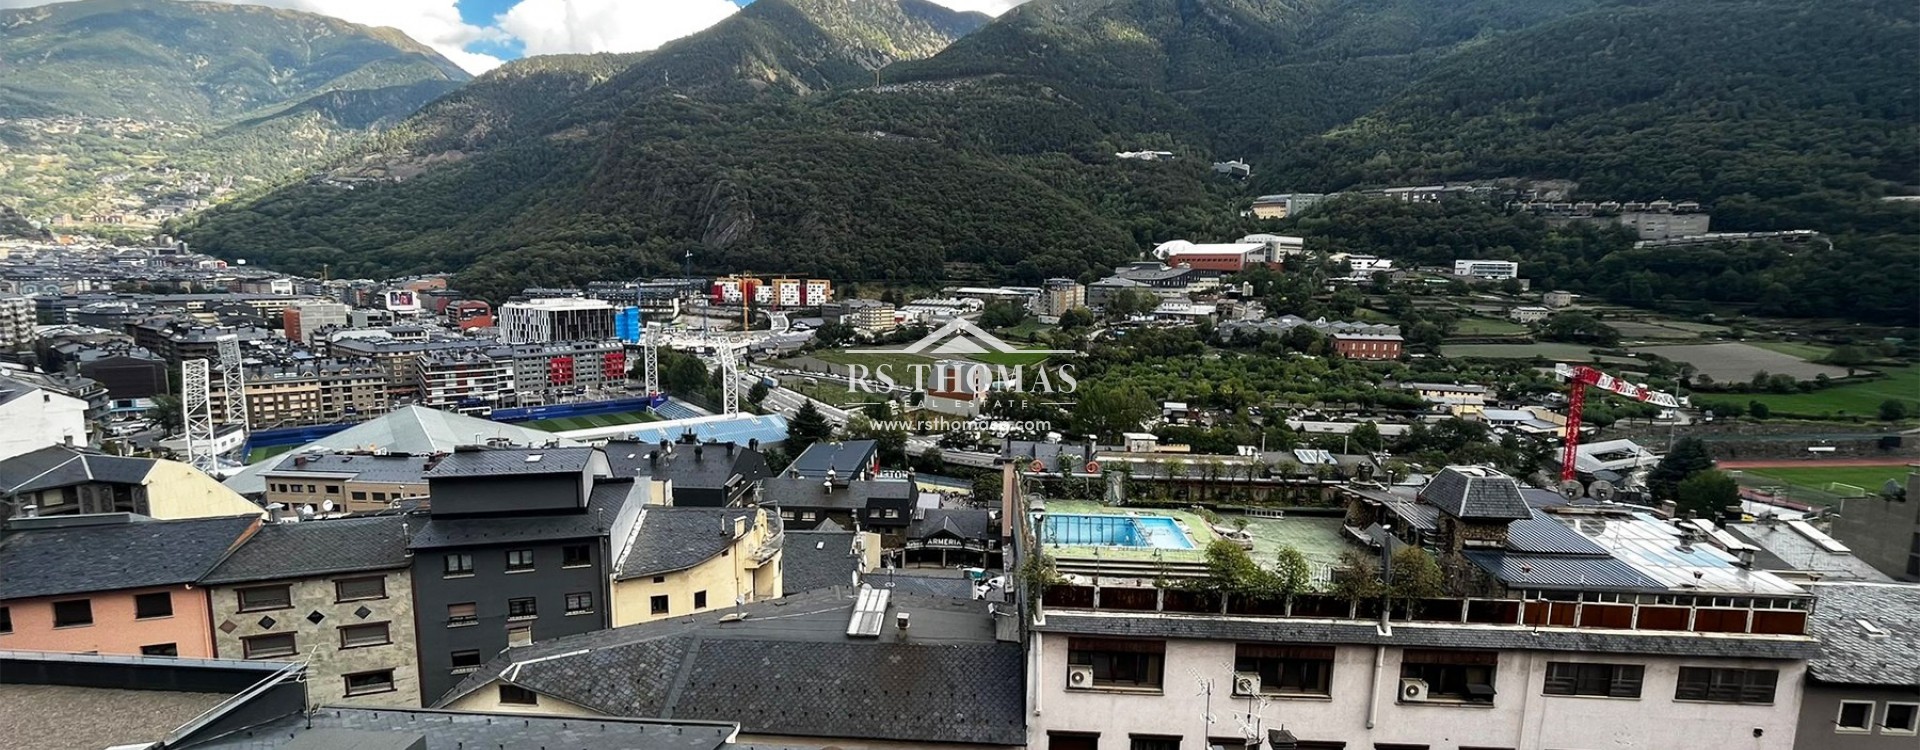 Apartment for rent in Andorra la Vella